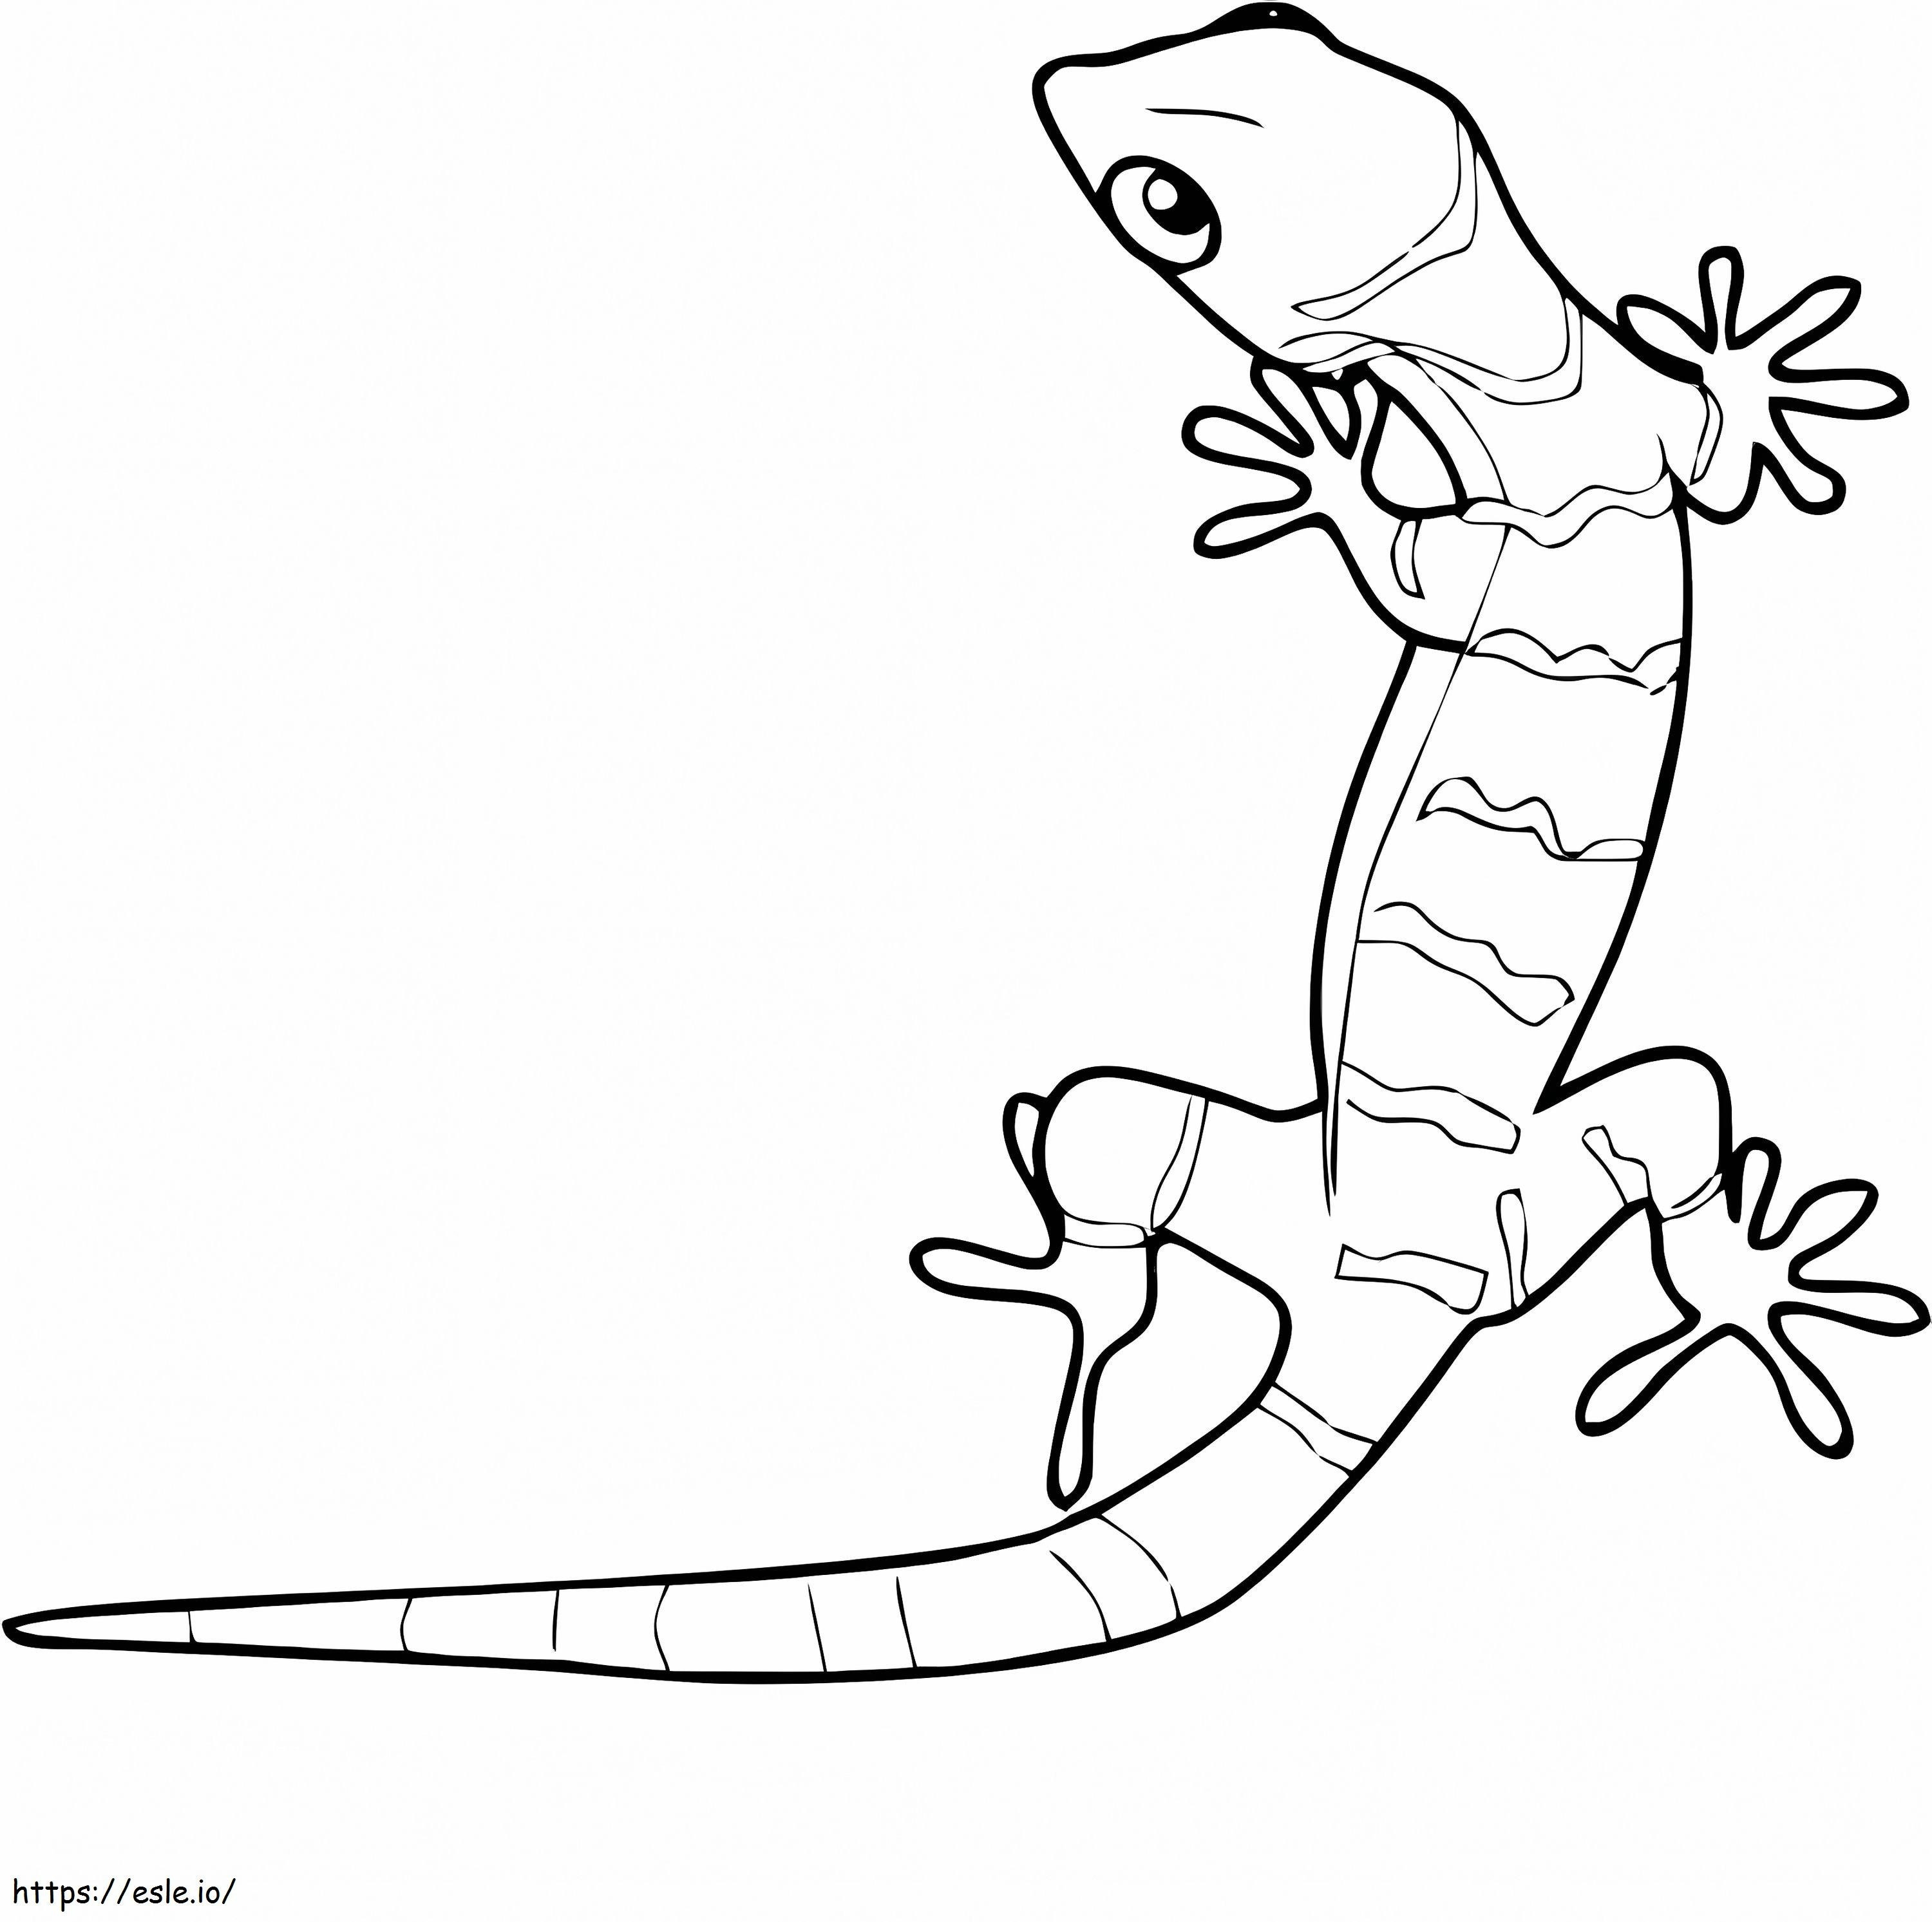 Toller Gecko ausmalbilder